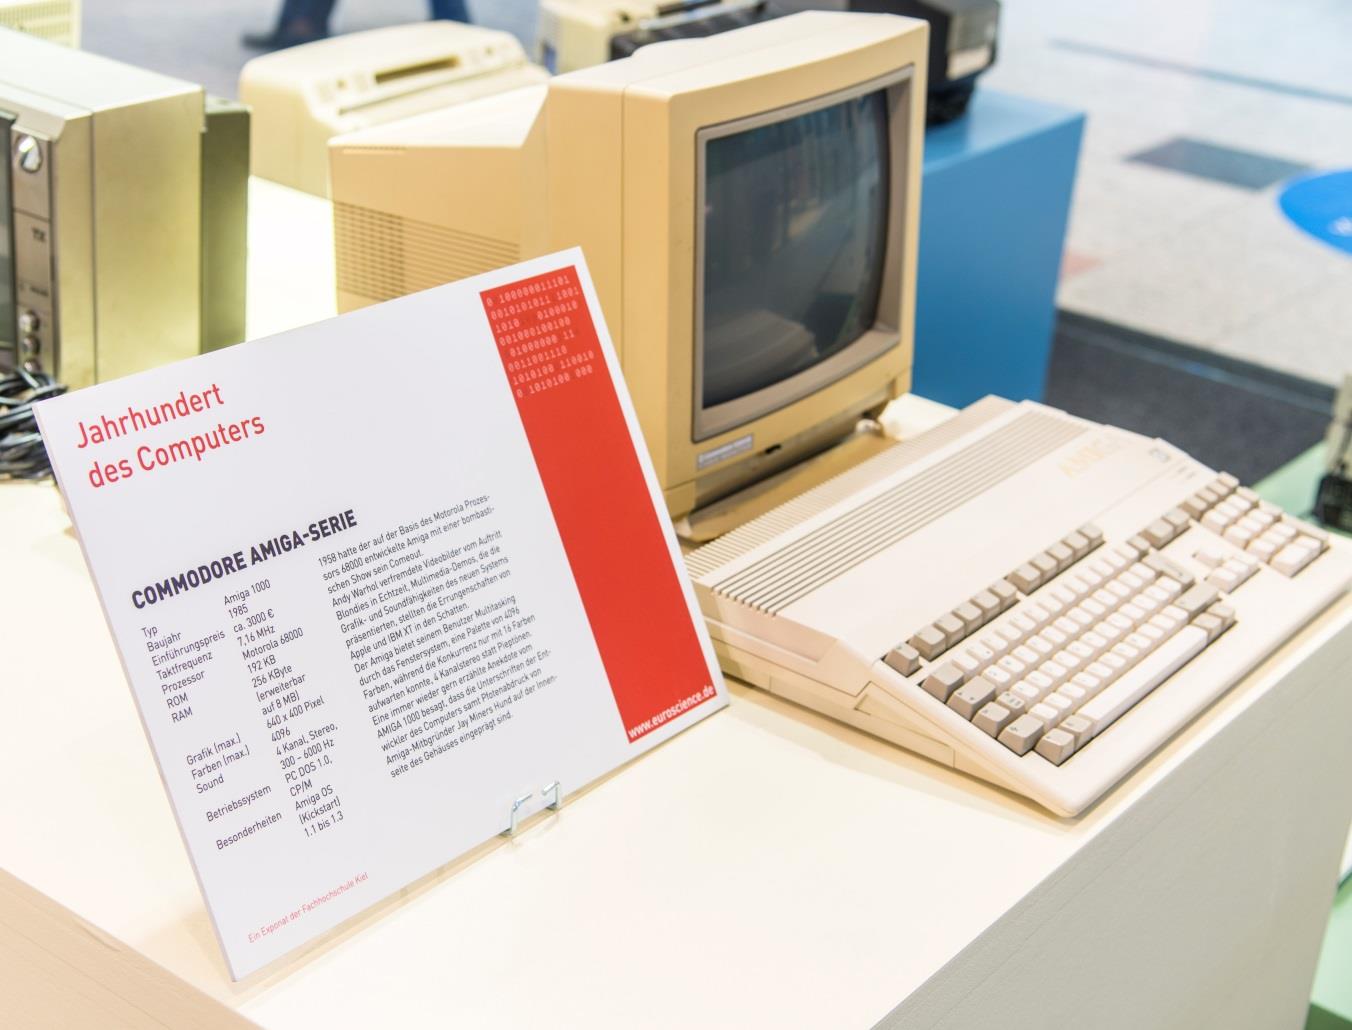 Amiga 1000 Commodore hatte den Amiga zwar als leistungsfähigen Spielcomputer konzipiert, aufgrund